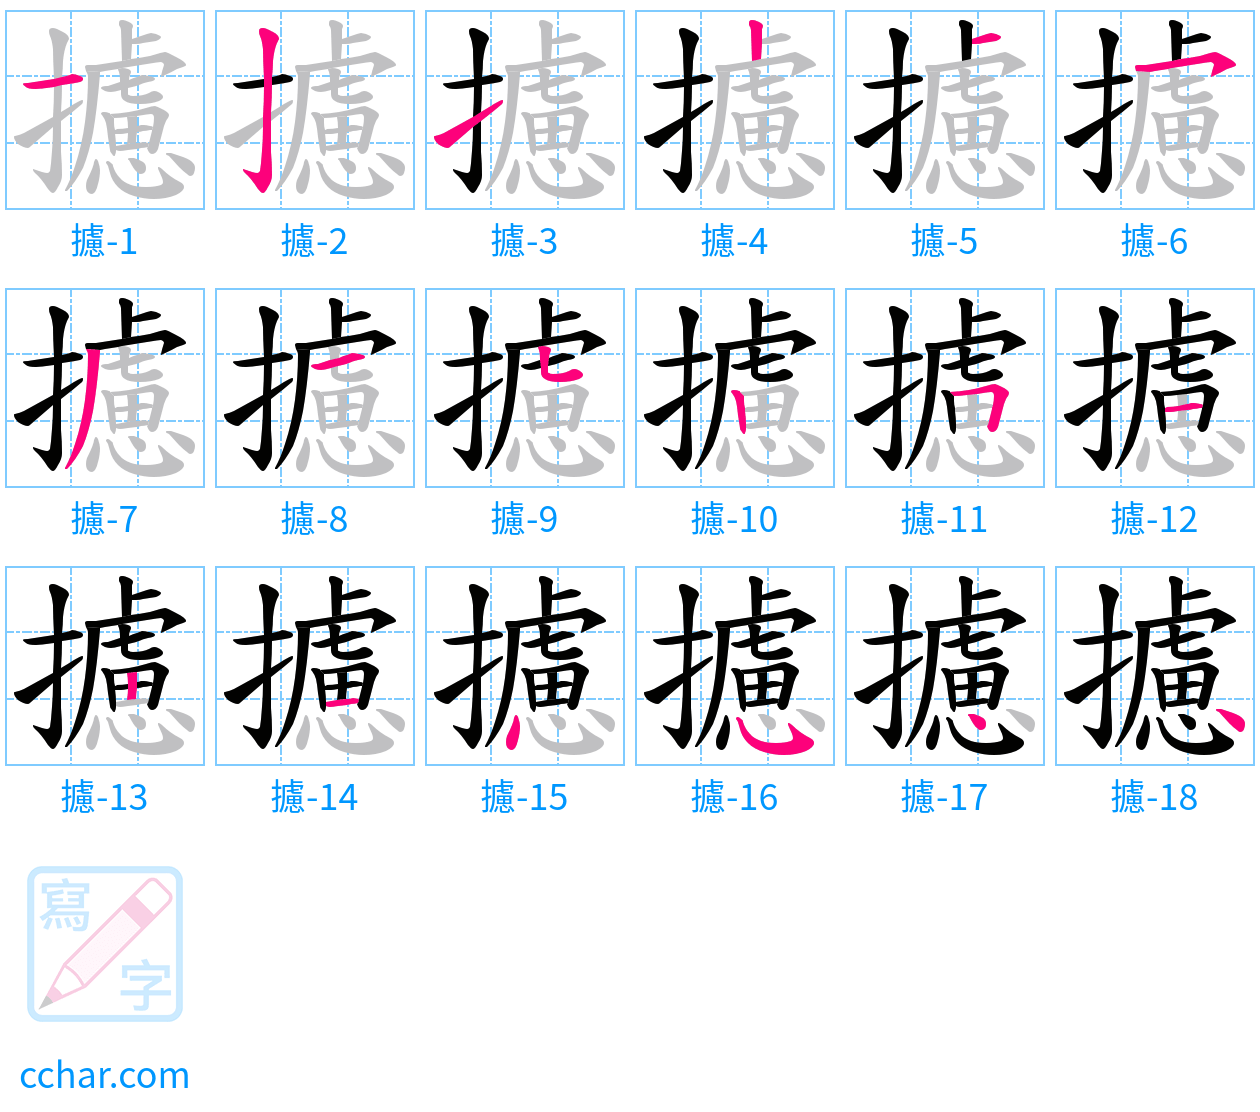 攄 stroke order step-by-step diagram